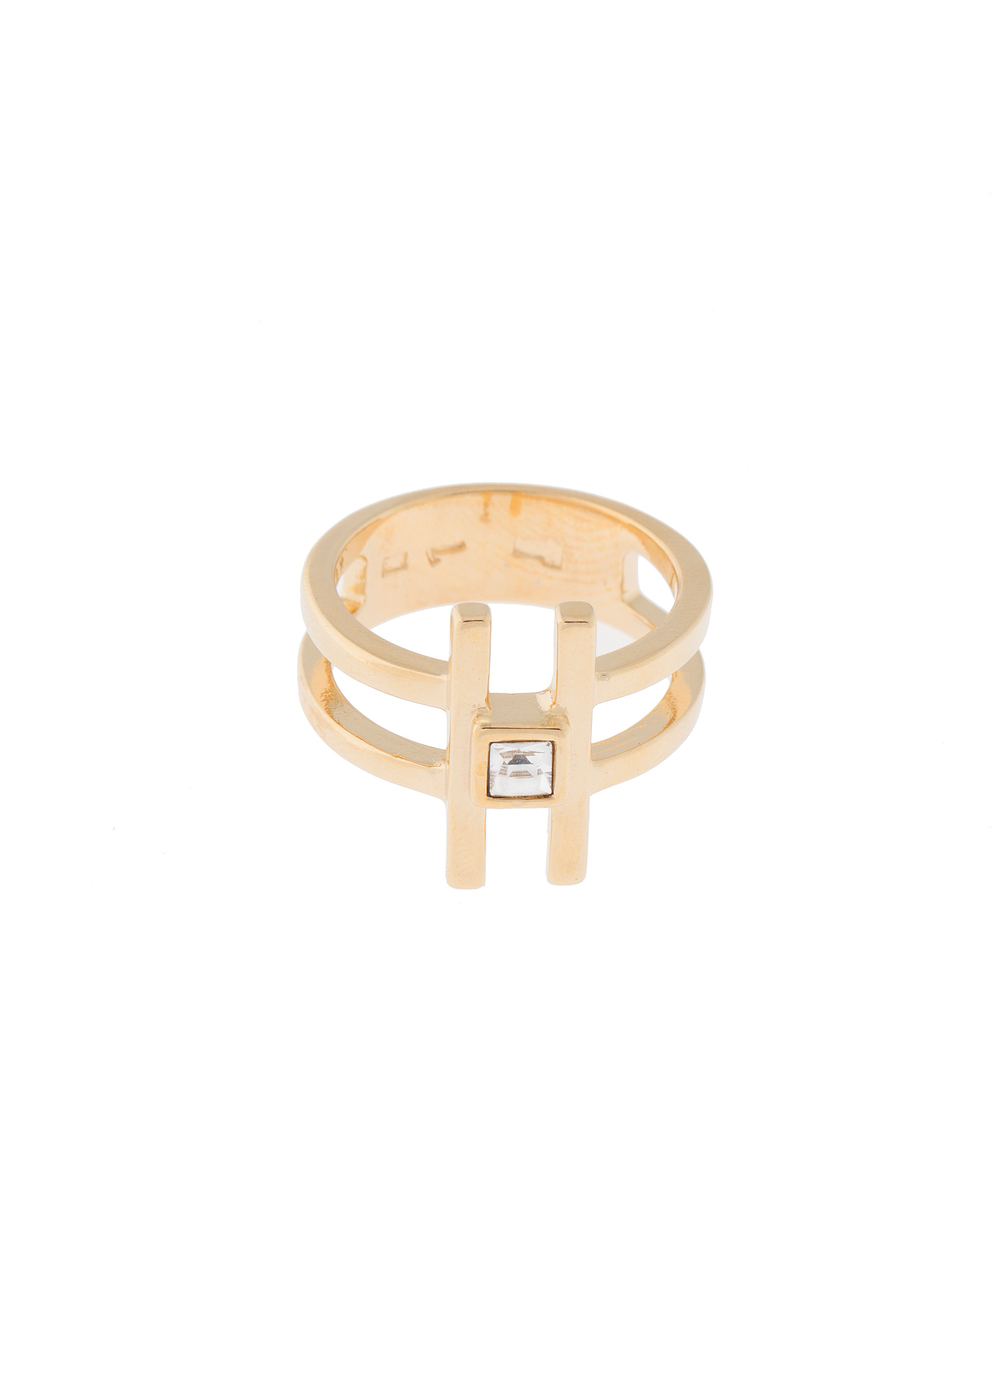 "Филера" кольцо в золотом покрытии из коллекции "Линия судьбы" от Jenavi